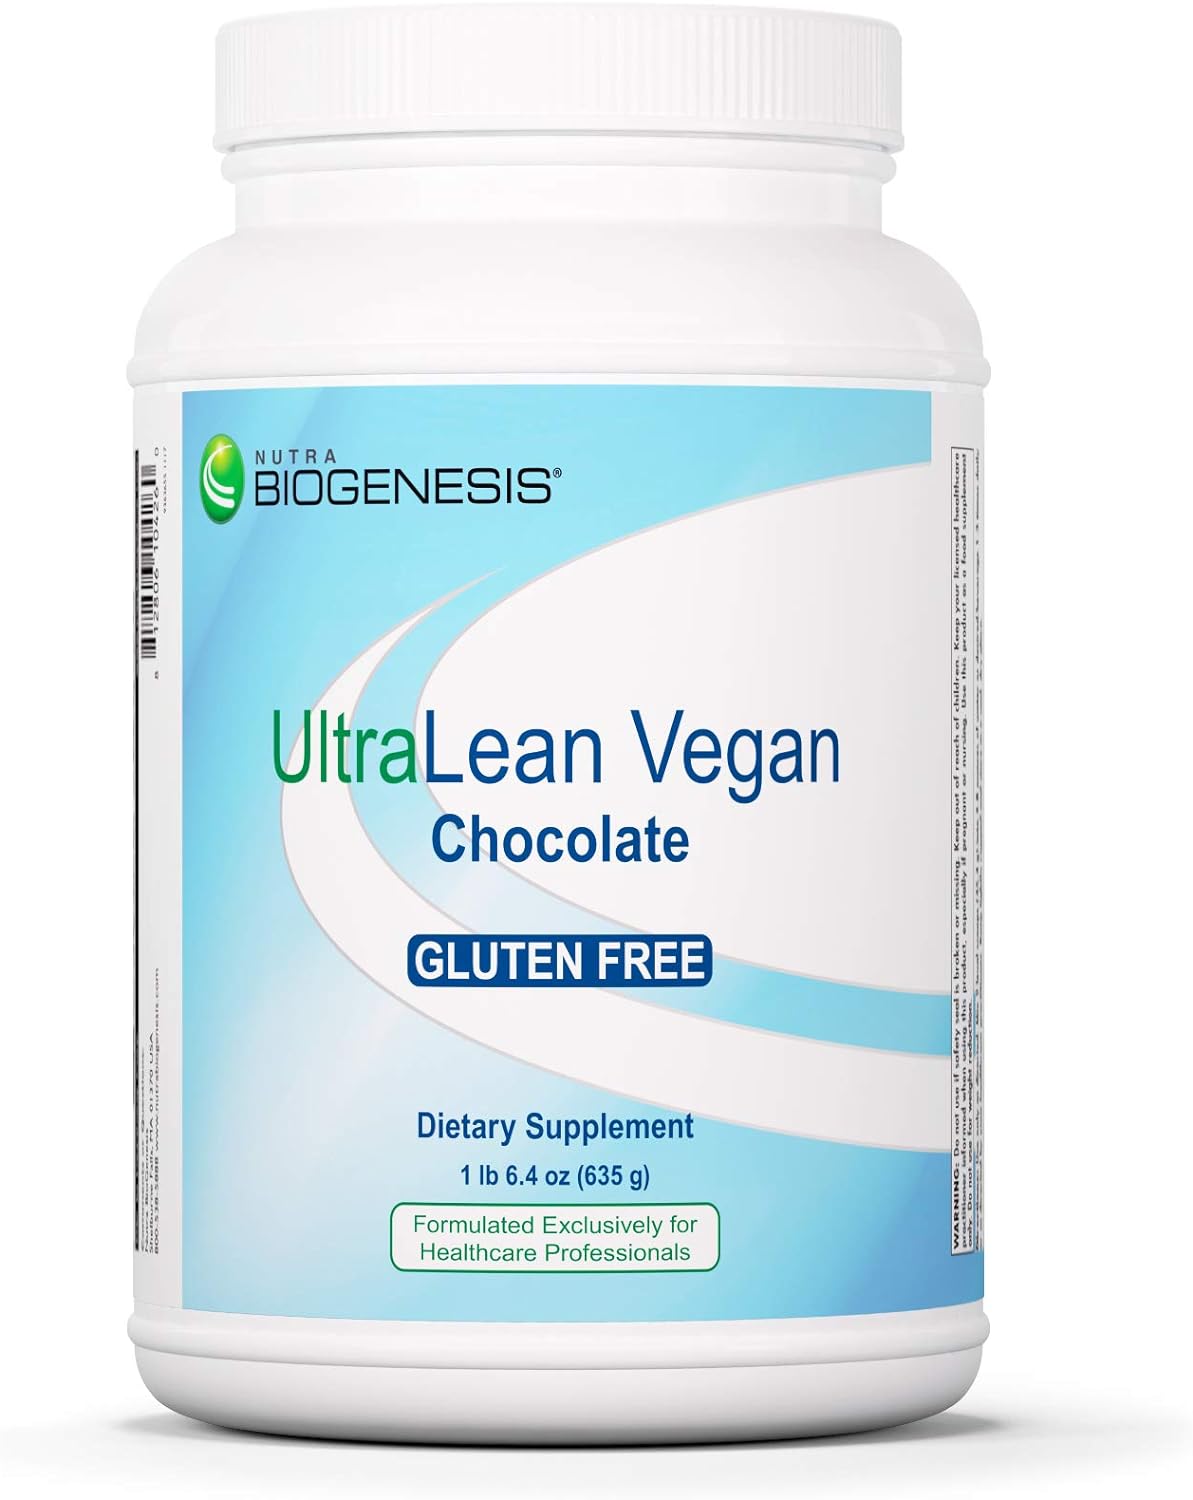 Nutra BioGenesis - UltraLean Vegan Chocolate - Gluten Free Functional